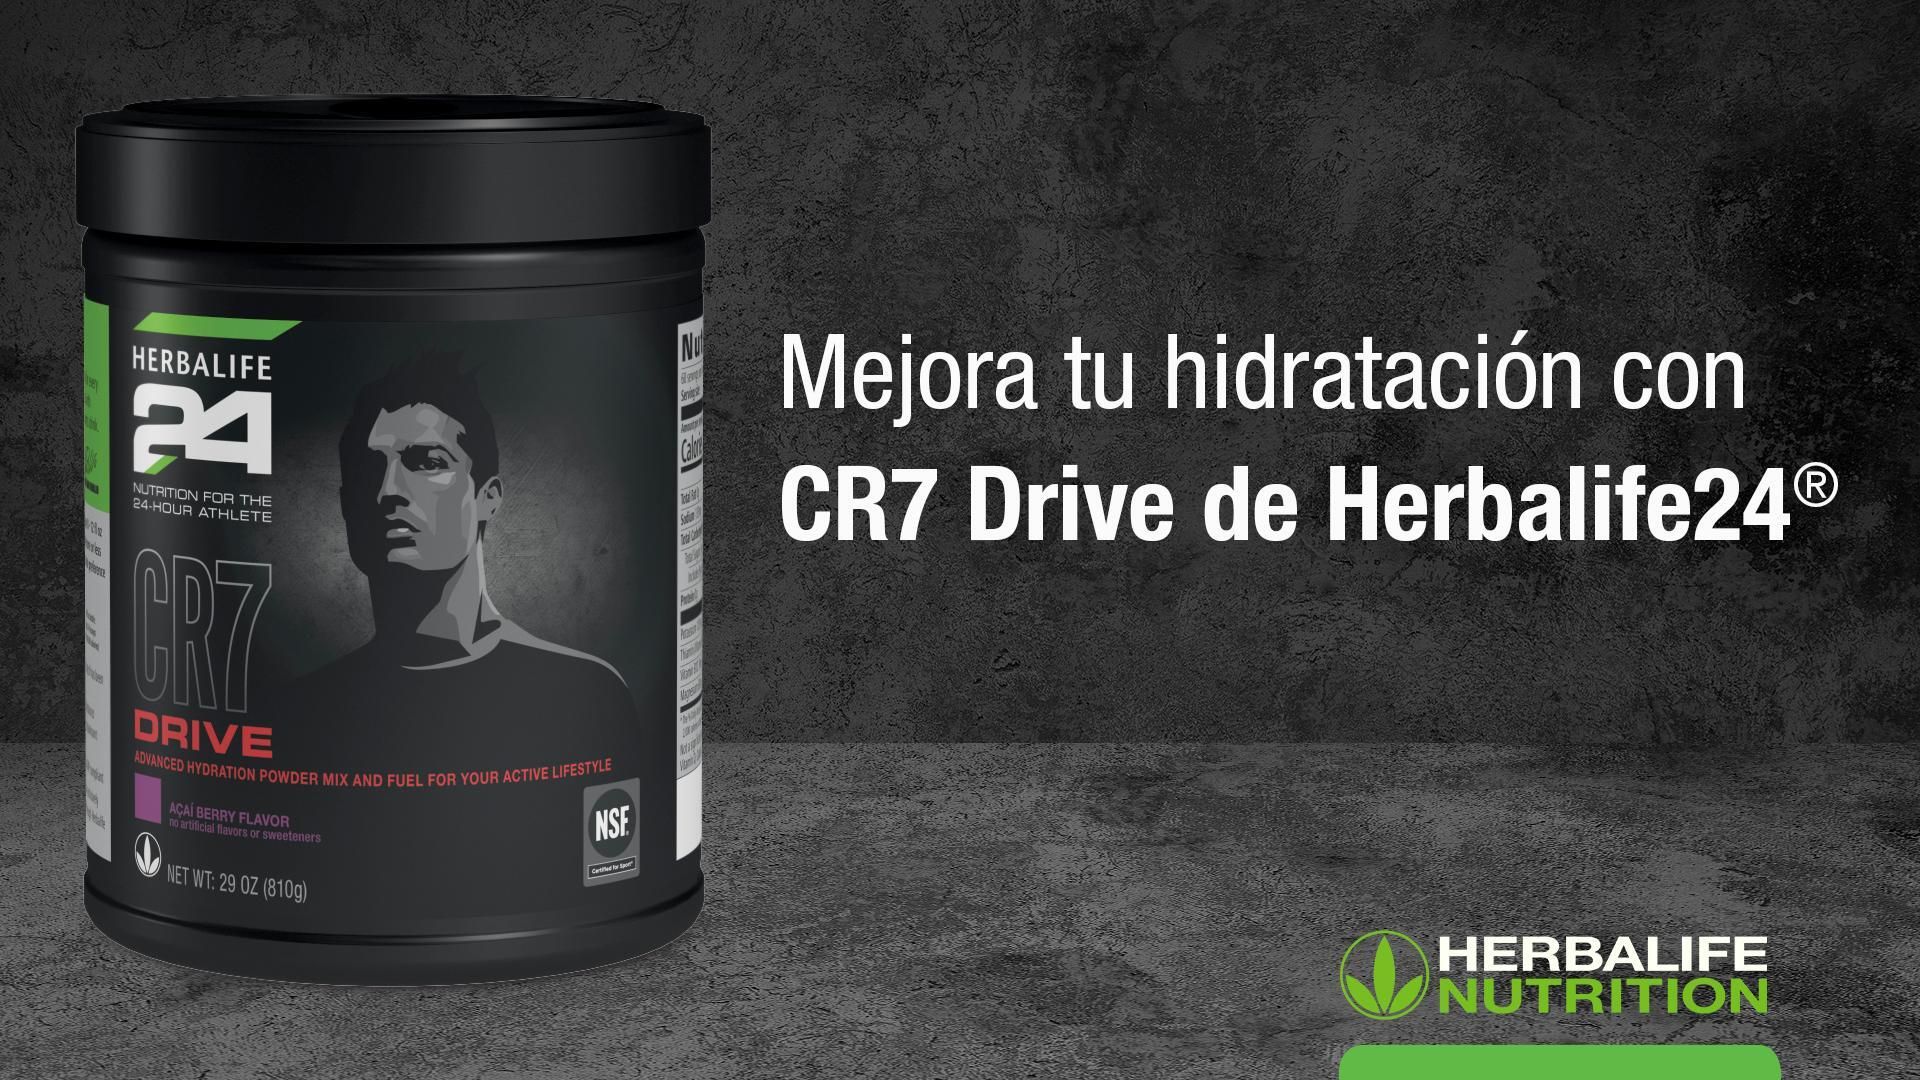 Herbalife24® CR7 Drive: Conoce los Productos